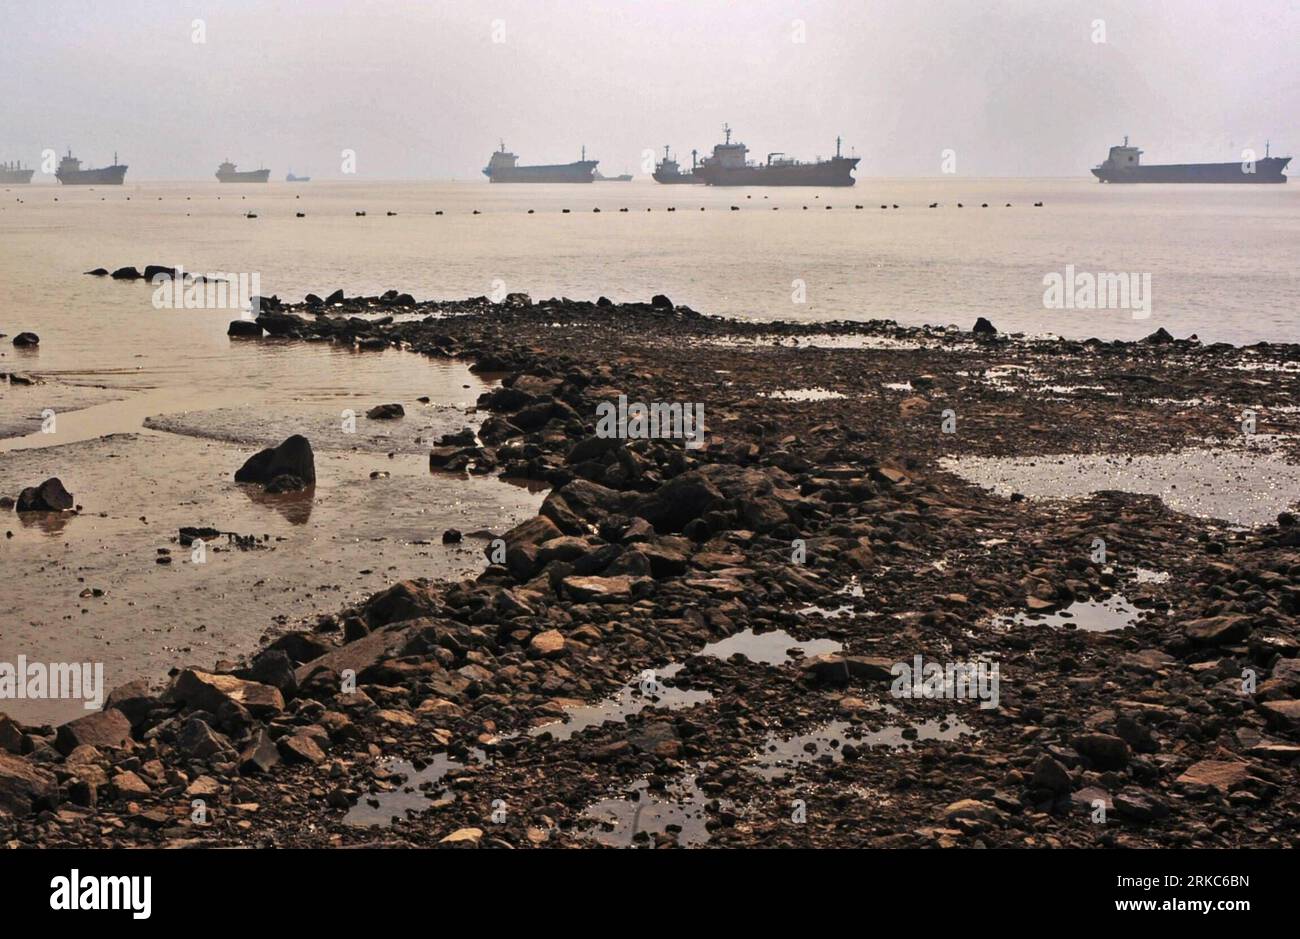 Bildnummer : 54678835 Datum : 17.10.2010 Copyright : imago/Xinhua (101126) -- TAIZHOU, 26 novembre 2010 (Xinhua) -- des navires invendus sont vus à l'ancre dans la rivière Lingjiang dans la ville de Taizhou, province de Zhejiang dans l'est de la Chine, 17 octobre 2009. En plus de 40 ans, l'océan vaste et profond a donné à Li Changxian tout sauf les soucis. Mais depuis le début de la crise financière mondiale il y a deux ans, le milliardaire de 44 ans est tombé dans le blues. Debout dans le chantier naval autrefois animé de Hongda qu'il dirigeait à Taizhou, Li Changxian posa sa main sur la coque rouillée d'un navire inachevé et se demanda wheth Banque D'Images